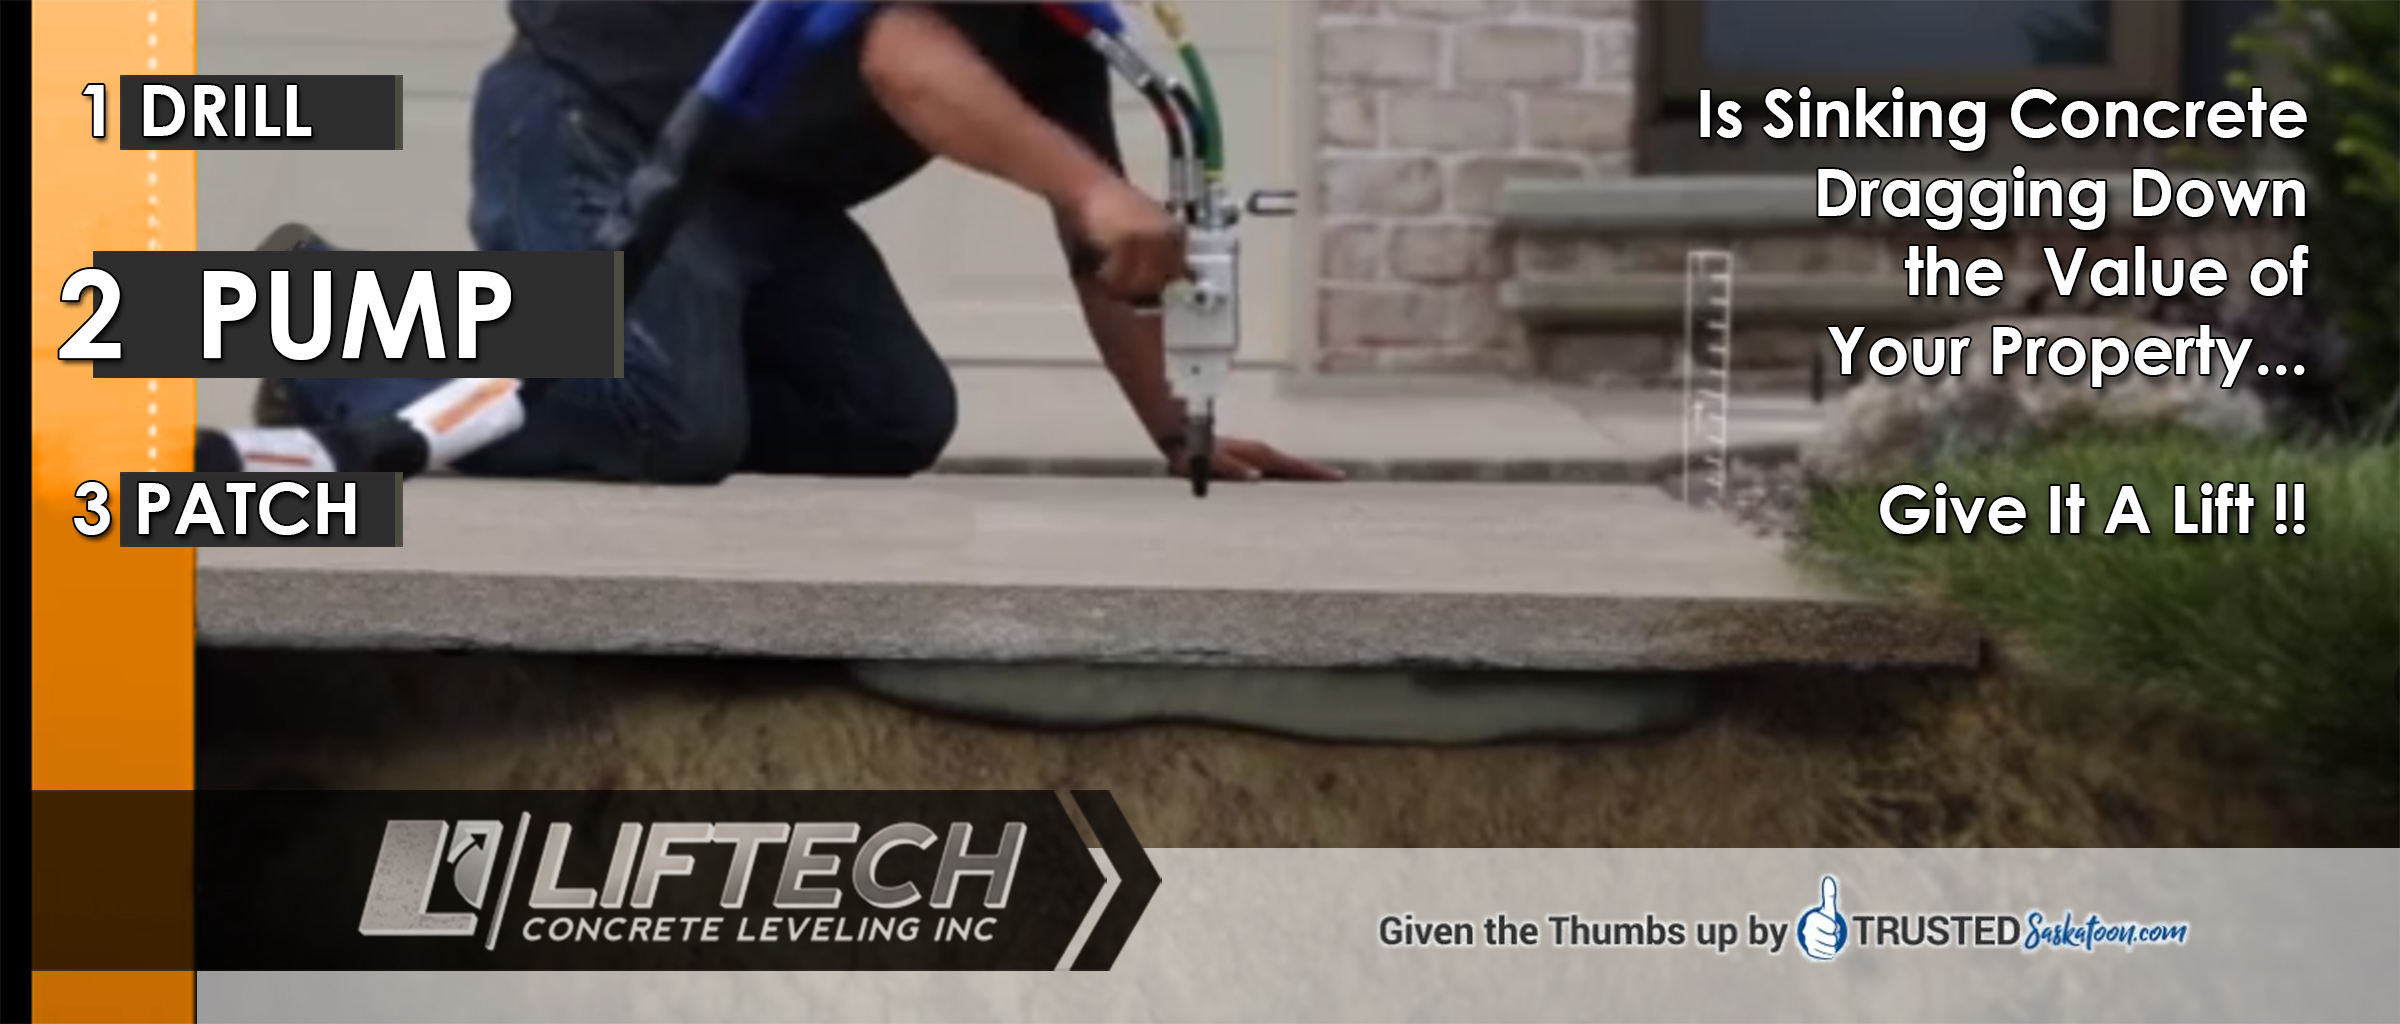 Liftech Concrete Leveling Inc